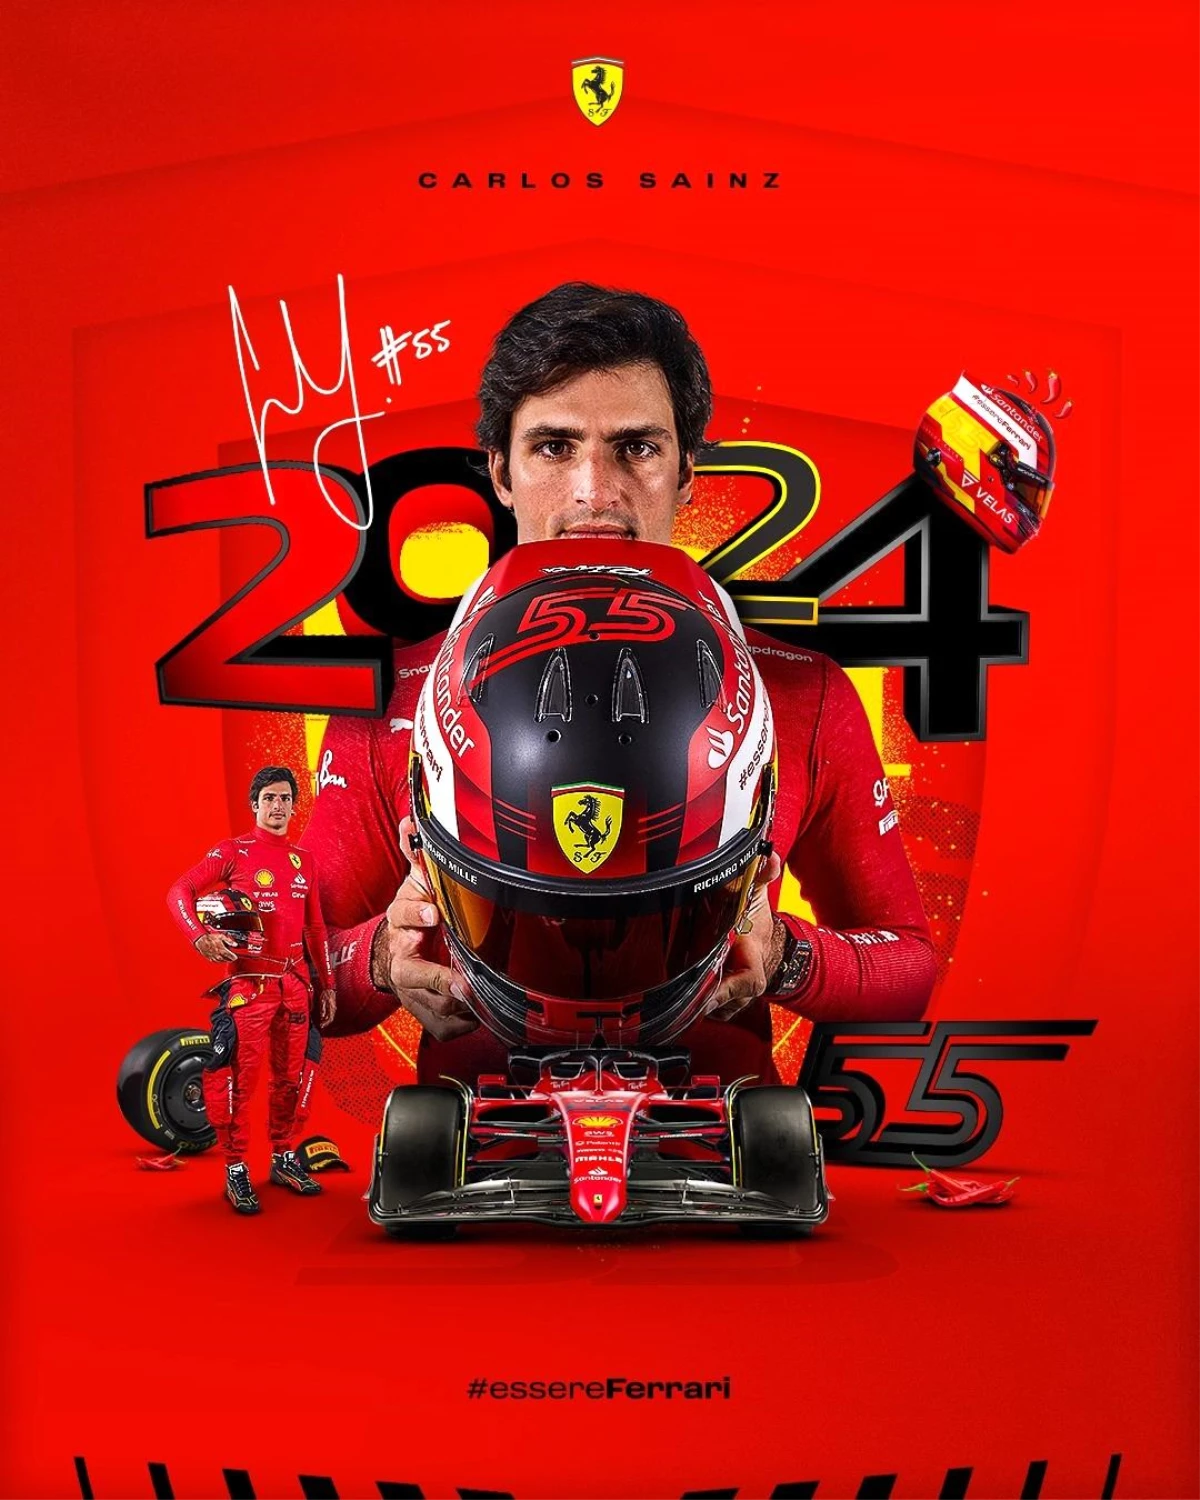 Ferrari, Sainz ile sözleşme uzattı